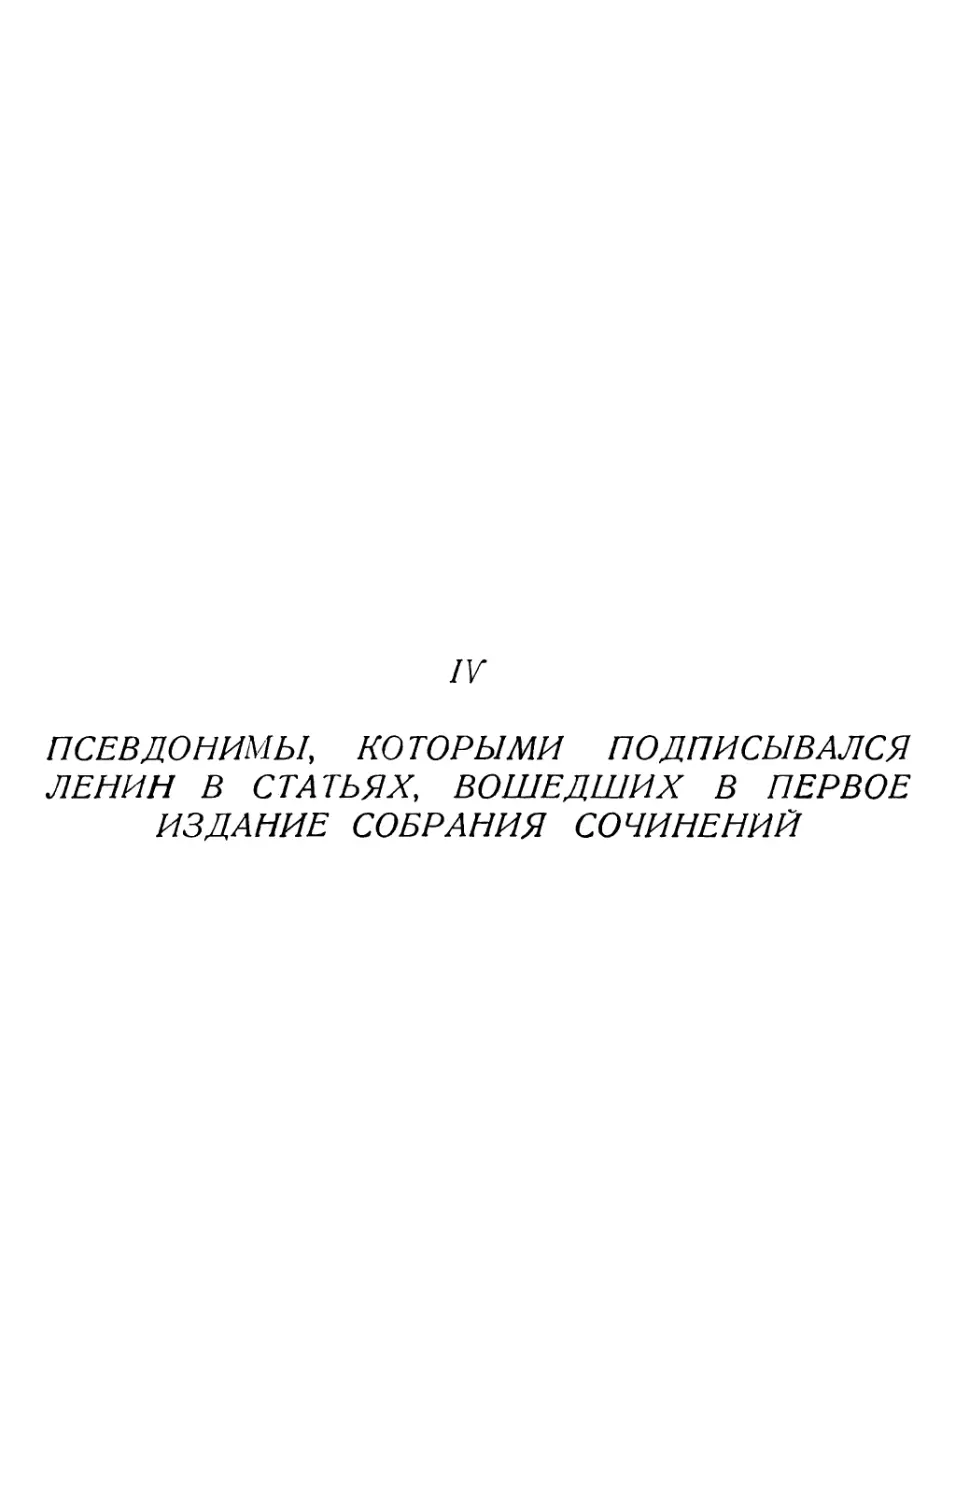 IV. Псевдонимы, которыми подписывался Ленин в статьях, вошедших в первое издание Собрания сочинений.